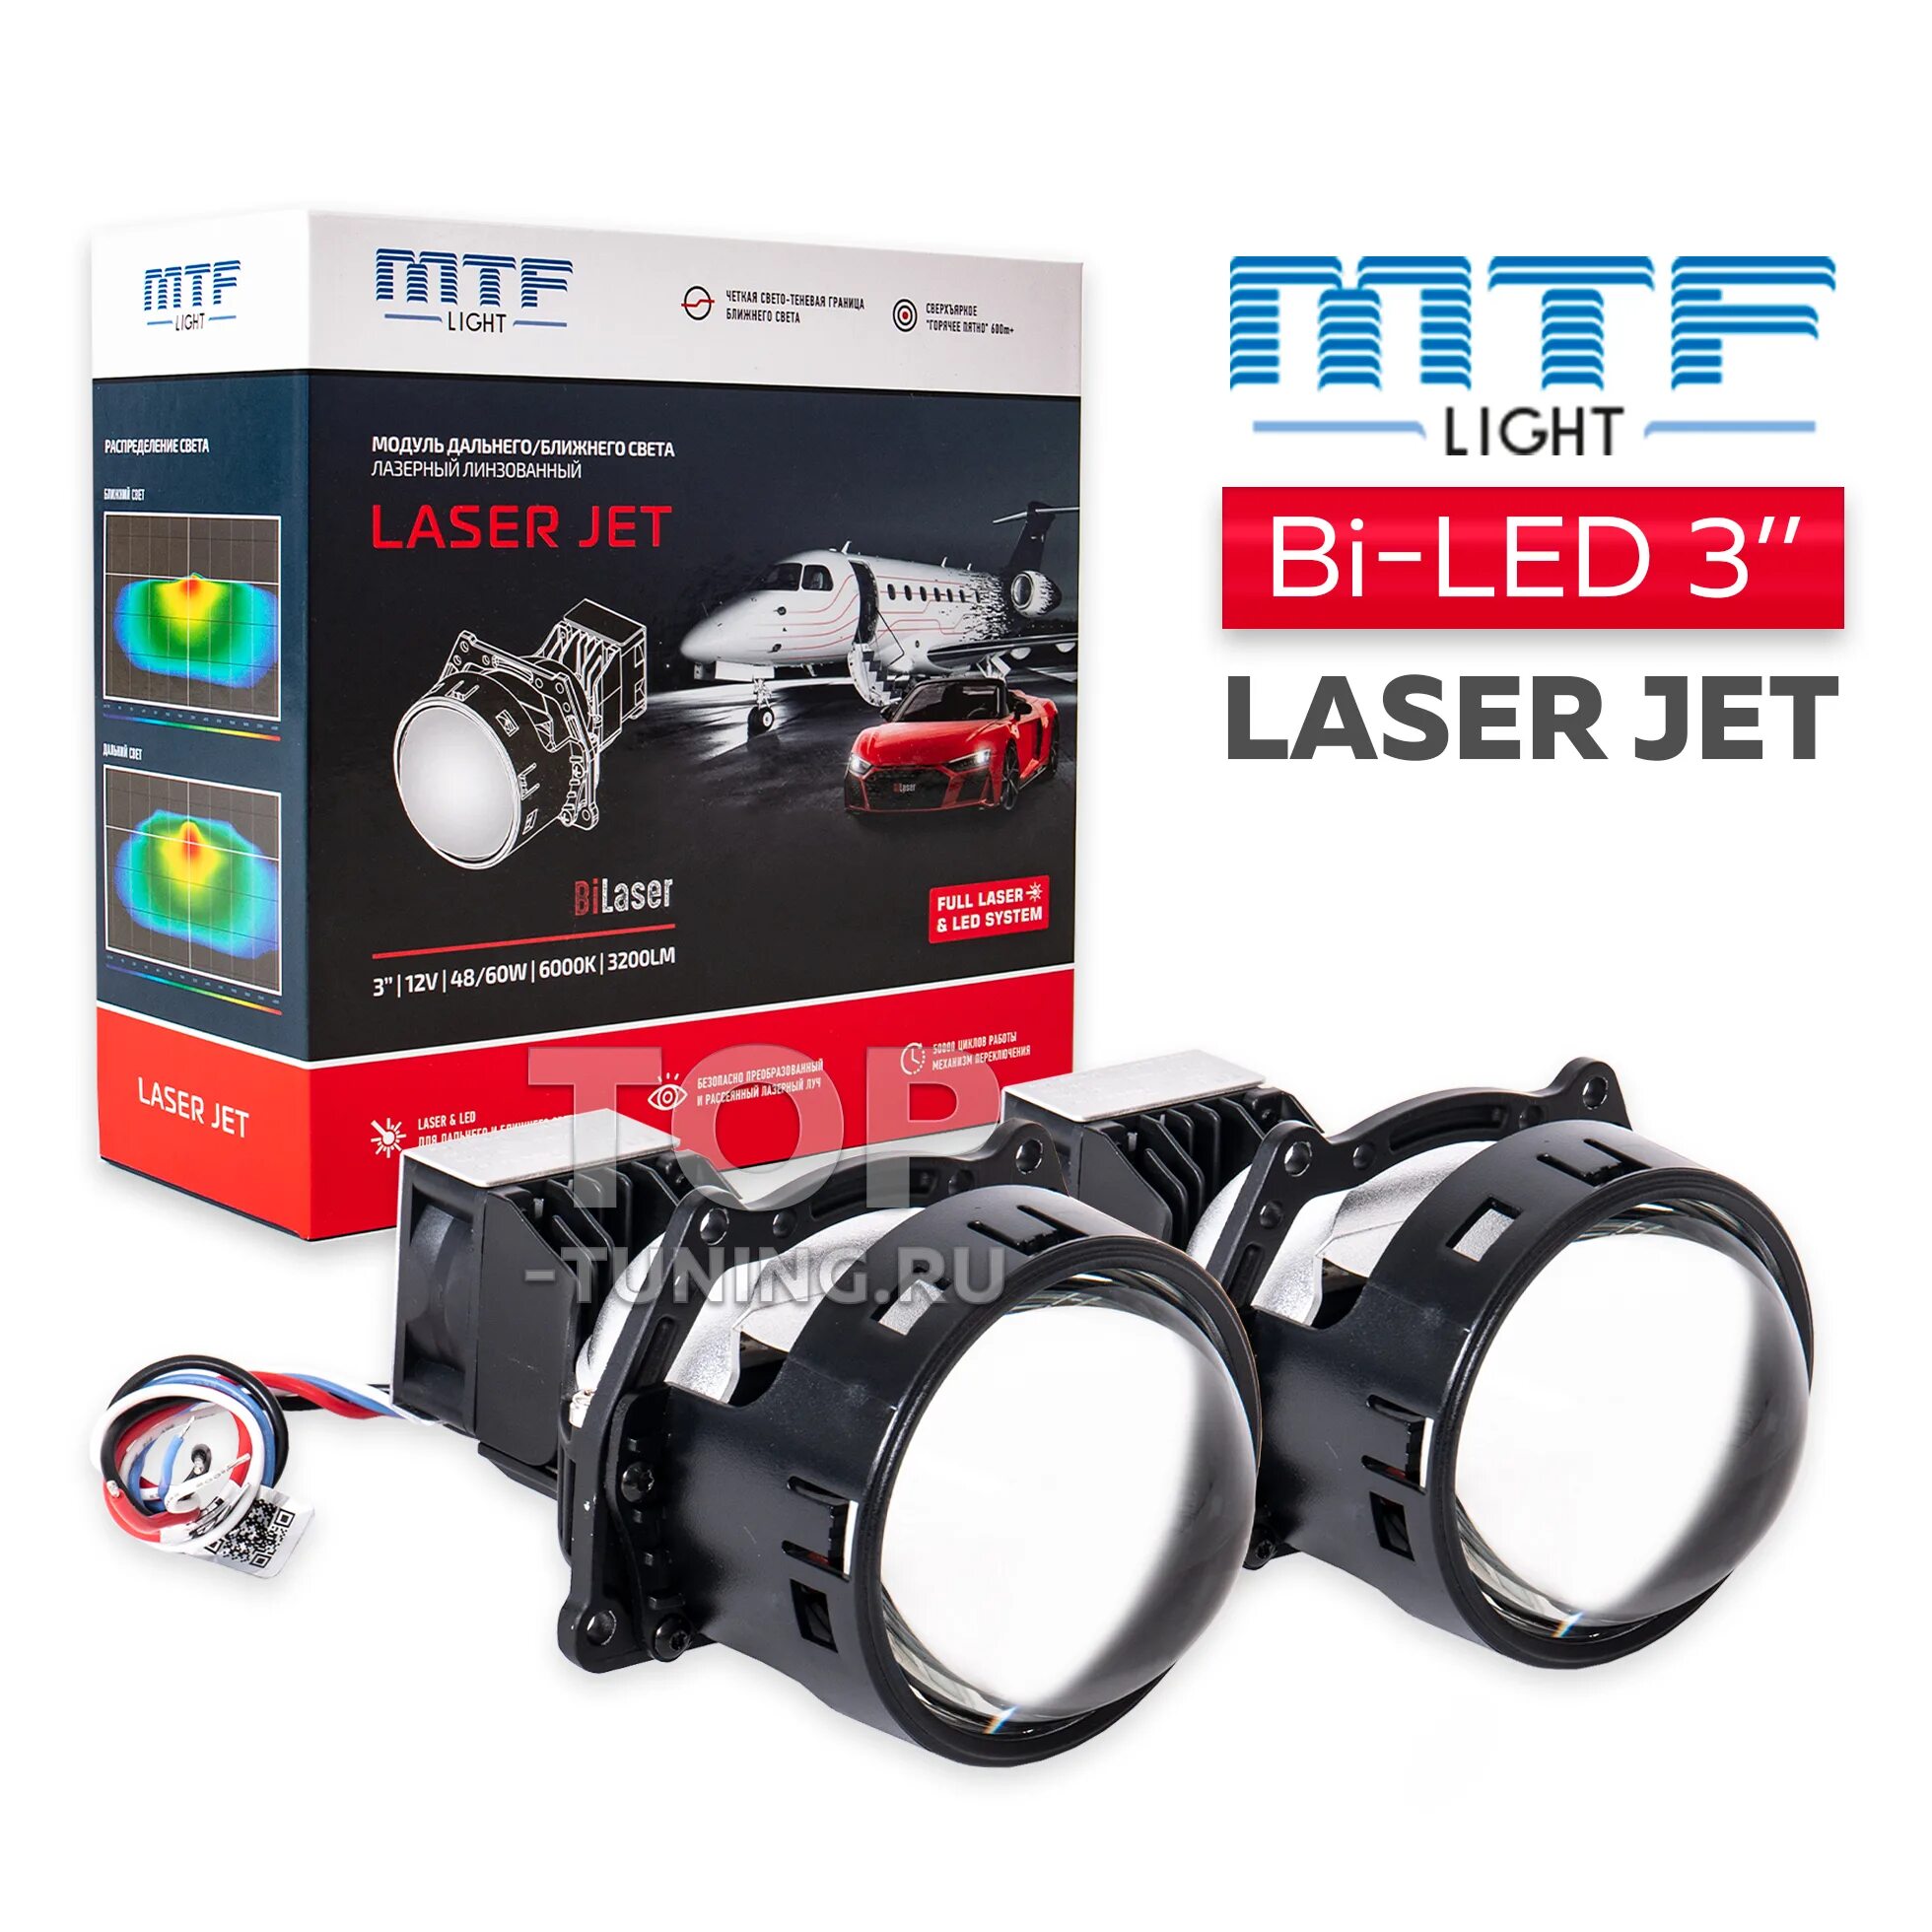 Линза мтф би лед. Clearlight 3.0 bi-led. MTF Light Laser Jet bi-led 3.0 6000k линзы. Линзы МТФ би лед.